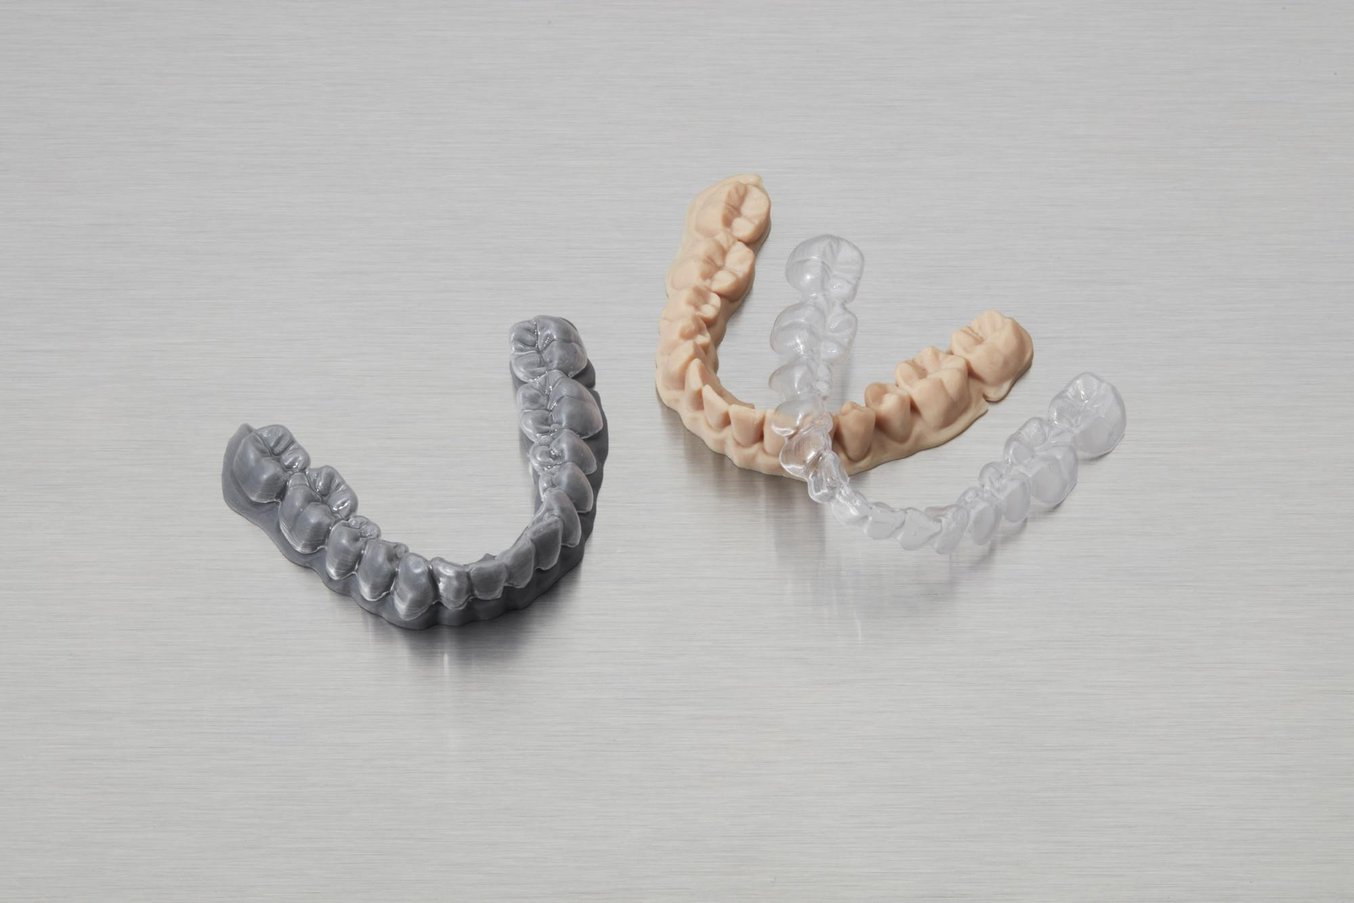 5 Maneras en que la impresión 3D ha redefinido la industria dental